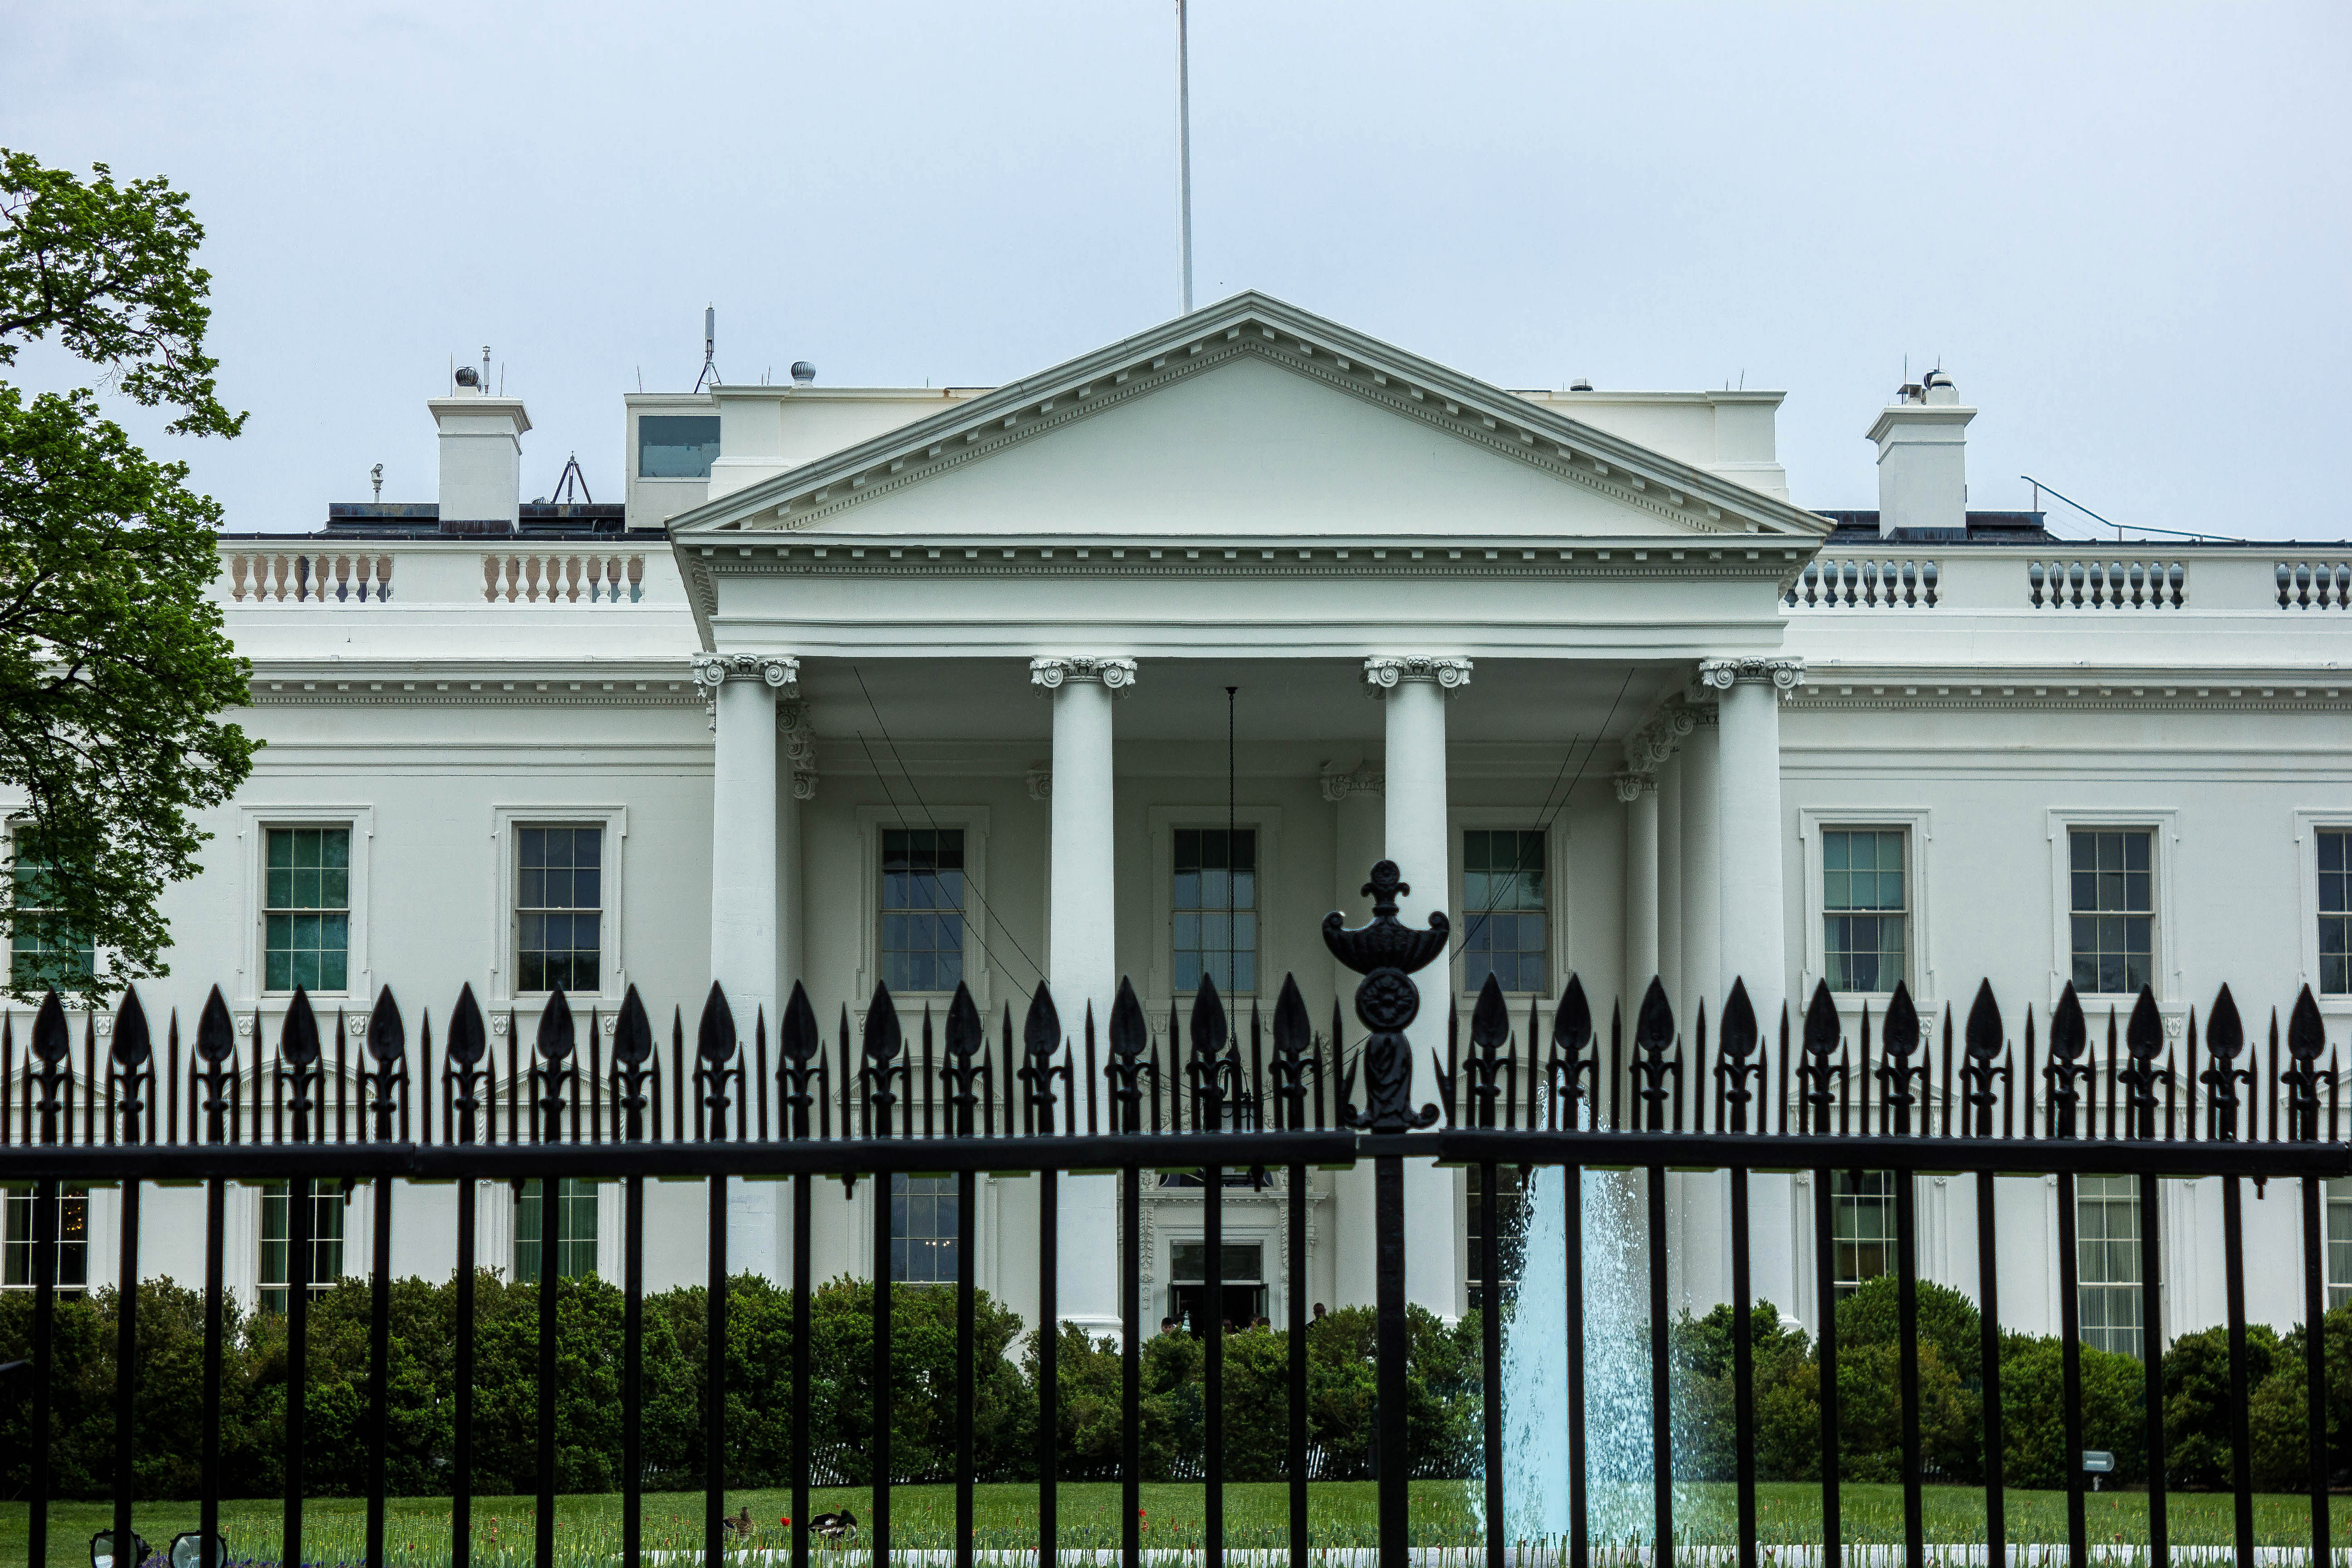 Gated White House in Washington DC image - Free stock photo - Public ...